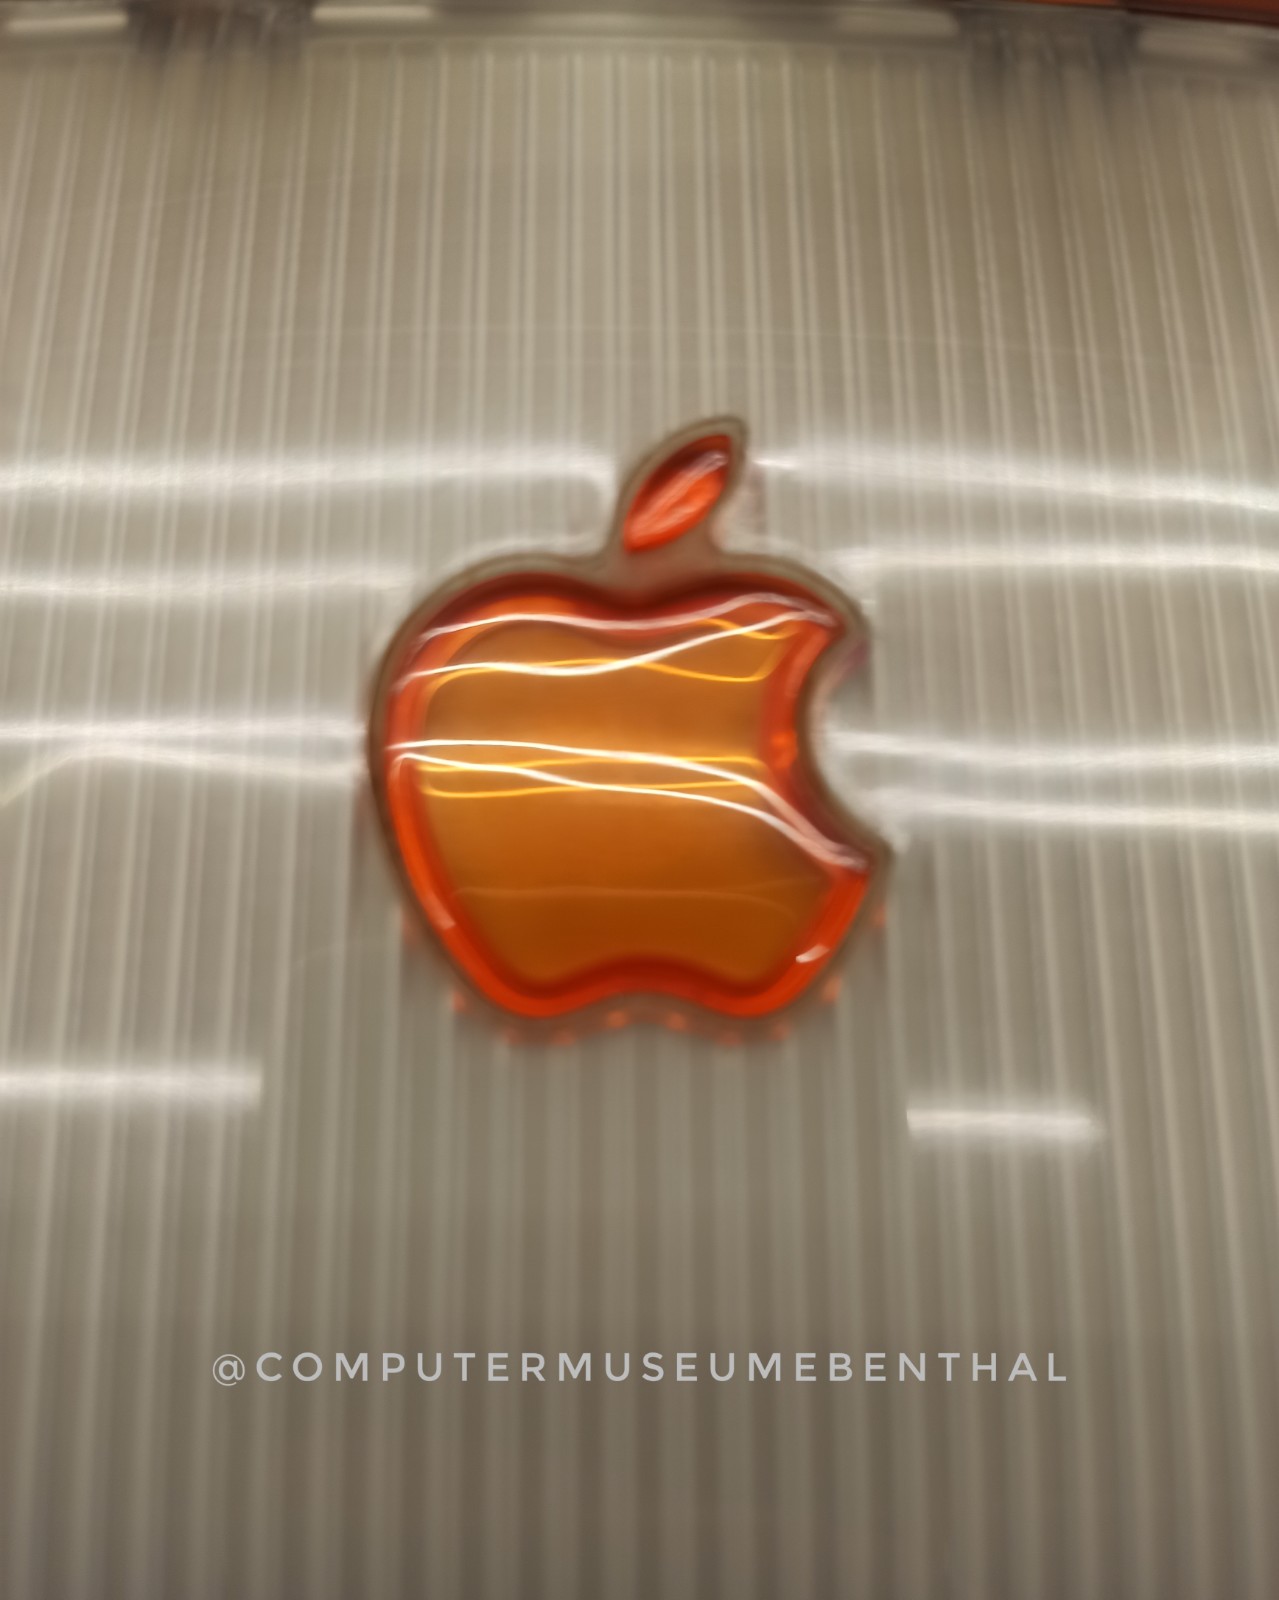 Apple iMac G3, Logo